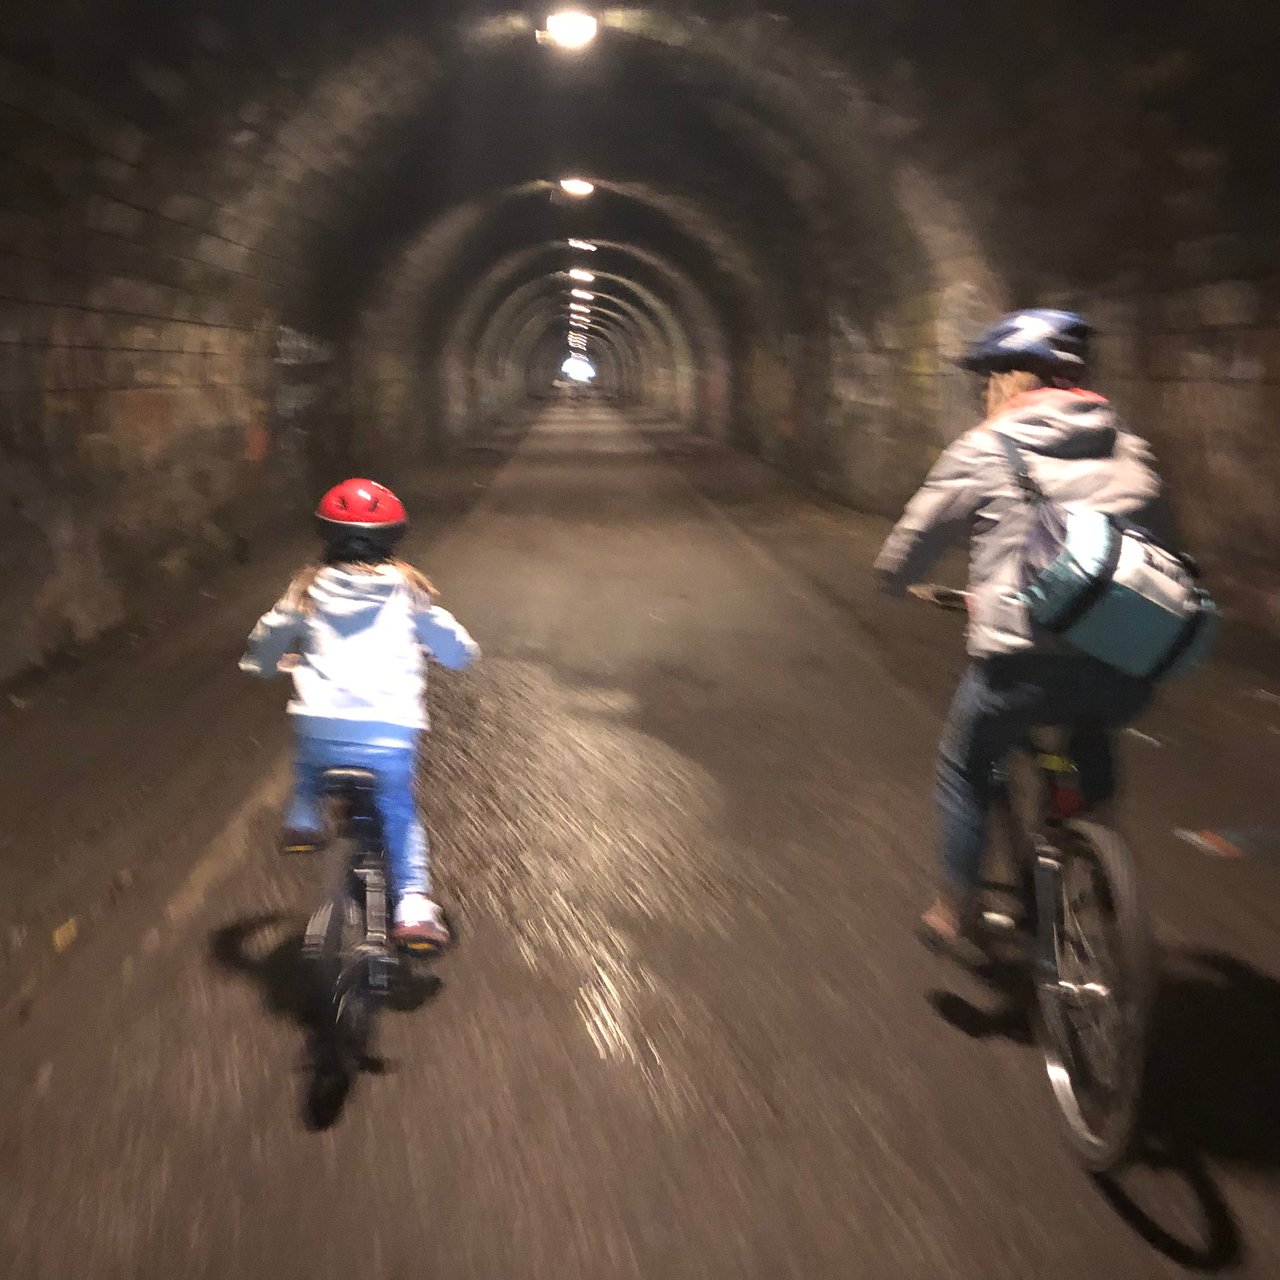 Tunnel Englischer Garten Frisch Innocent Railway Tunnel Edinburgh 2020 All You Need to